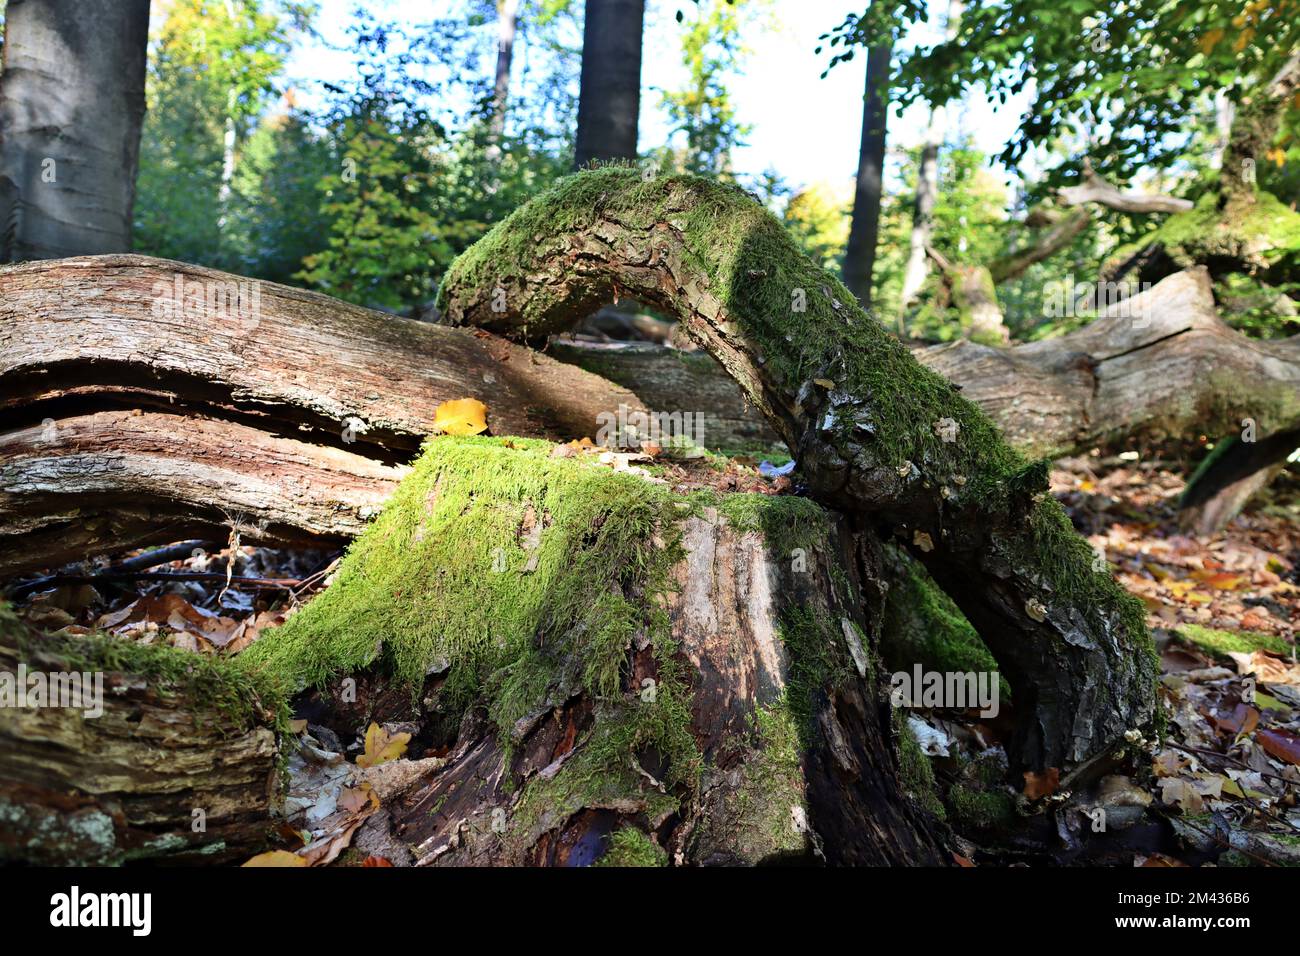 Verrottende Bäume im Natur- und Landschaftzschutzgebiet Urwald Sababurg, Reinhardswald, Hessen, Deutschland, Hofgeismar Banque D'Images